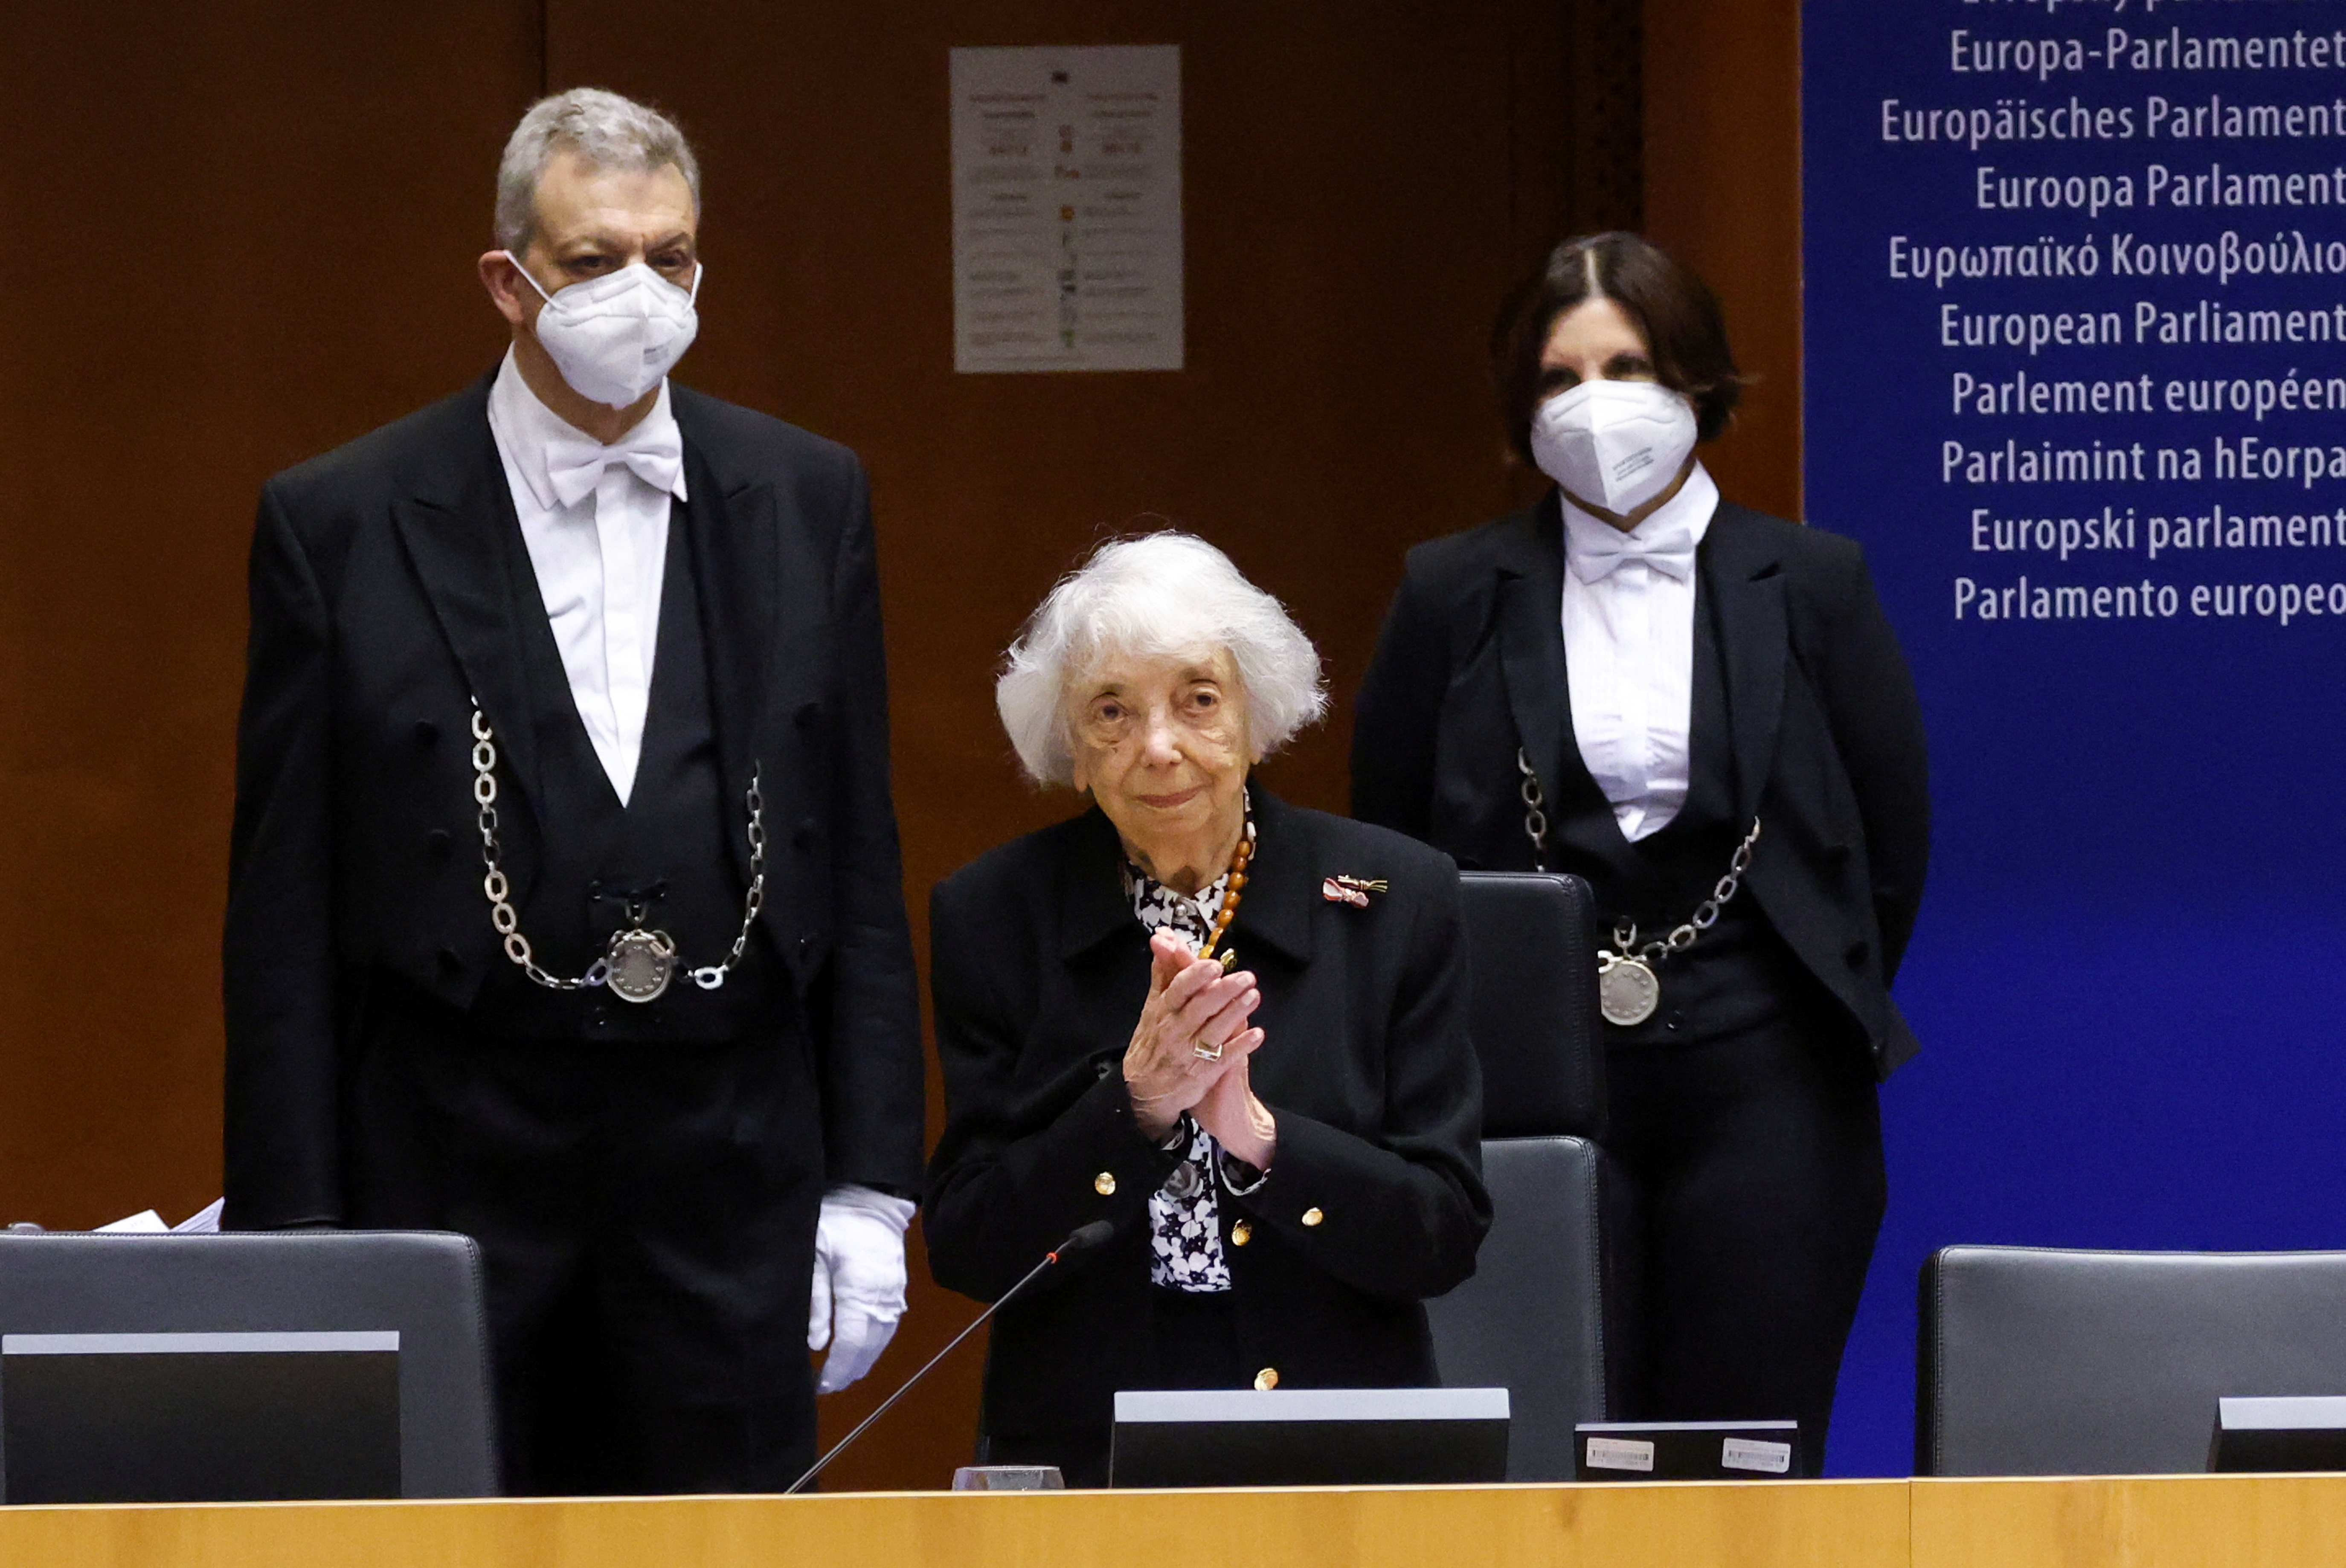 La sobreviviente del Holocausto Margot Friedlander reacciona después de ser aplaudida por miembros del parlamento durante una sesión plenaria especial para conmemorar el Día de la Memoria del Holocausto, en el Parlamento Europeo en Bruselas, Bélgica, el 27 de enero de 2022. REUTERS/Yves Herman